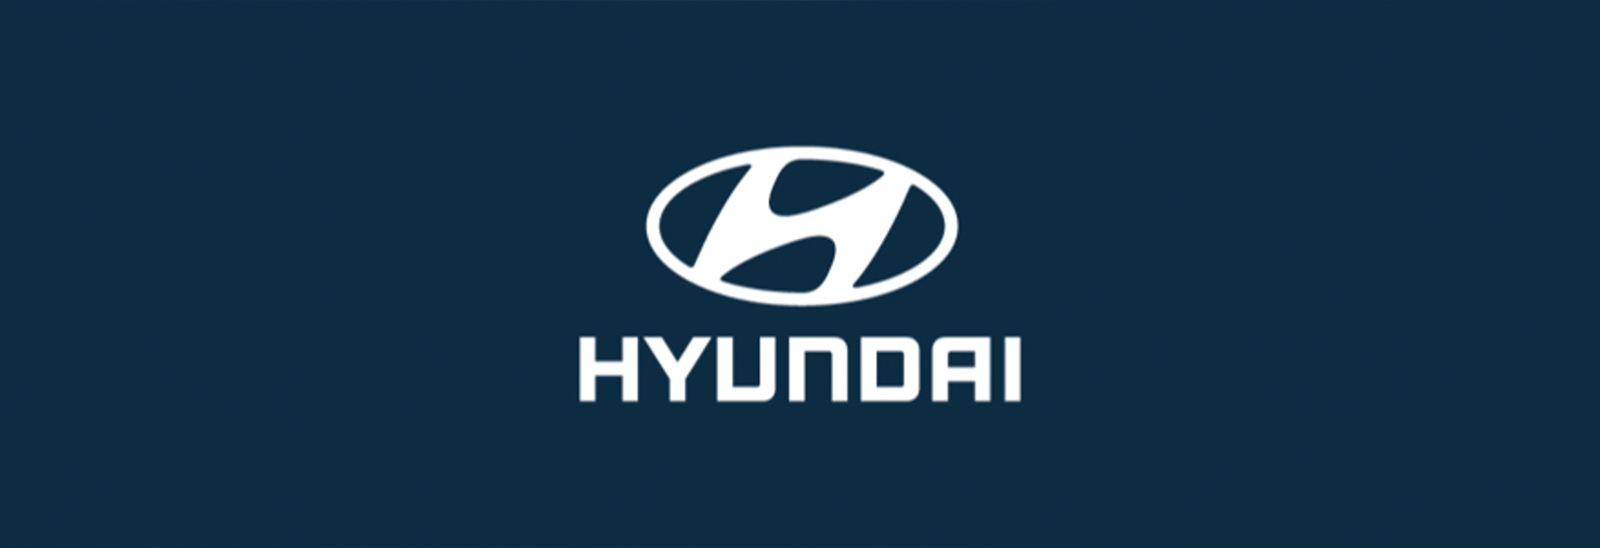 Logo de Hyundai con fondo azul